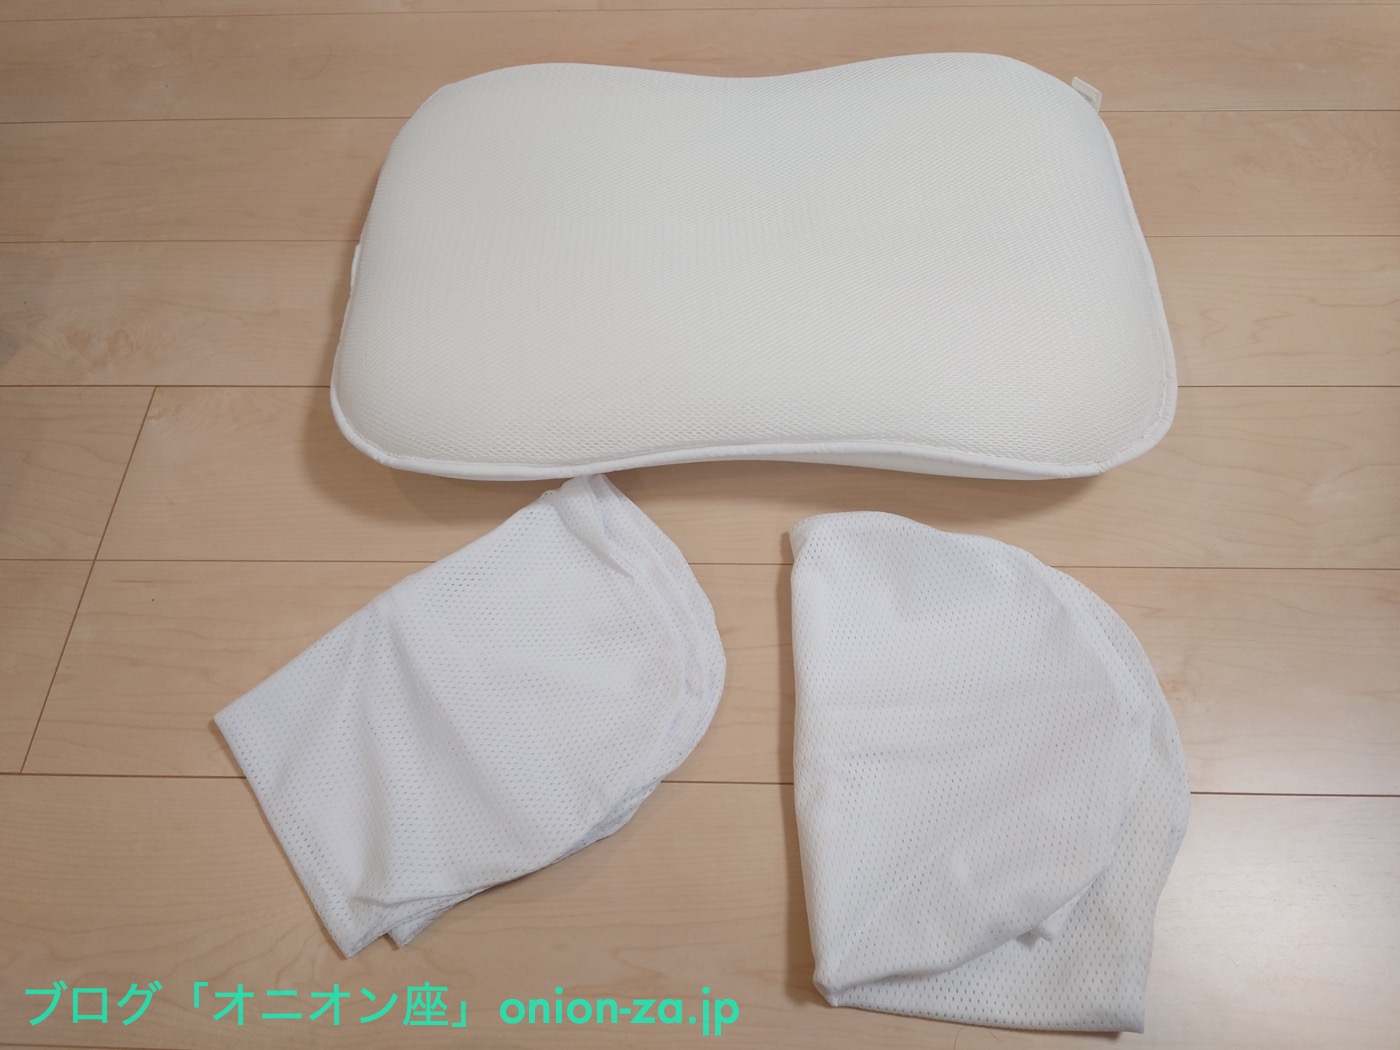 枕もカバーもサイズはヨコ60cmタテ40cm。カバーは他社の市販品も使えそうです。